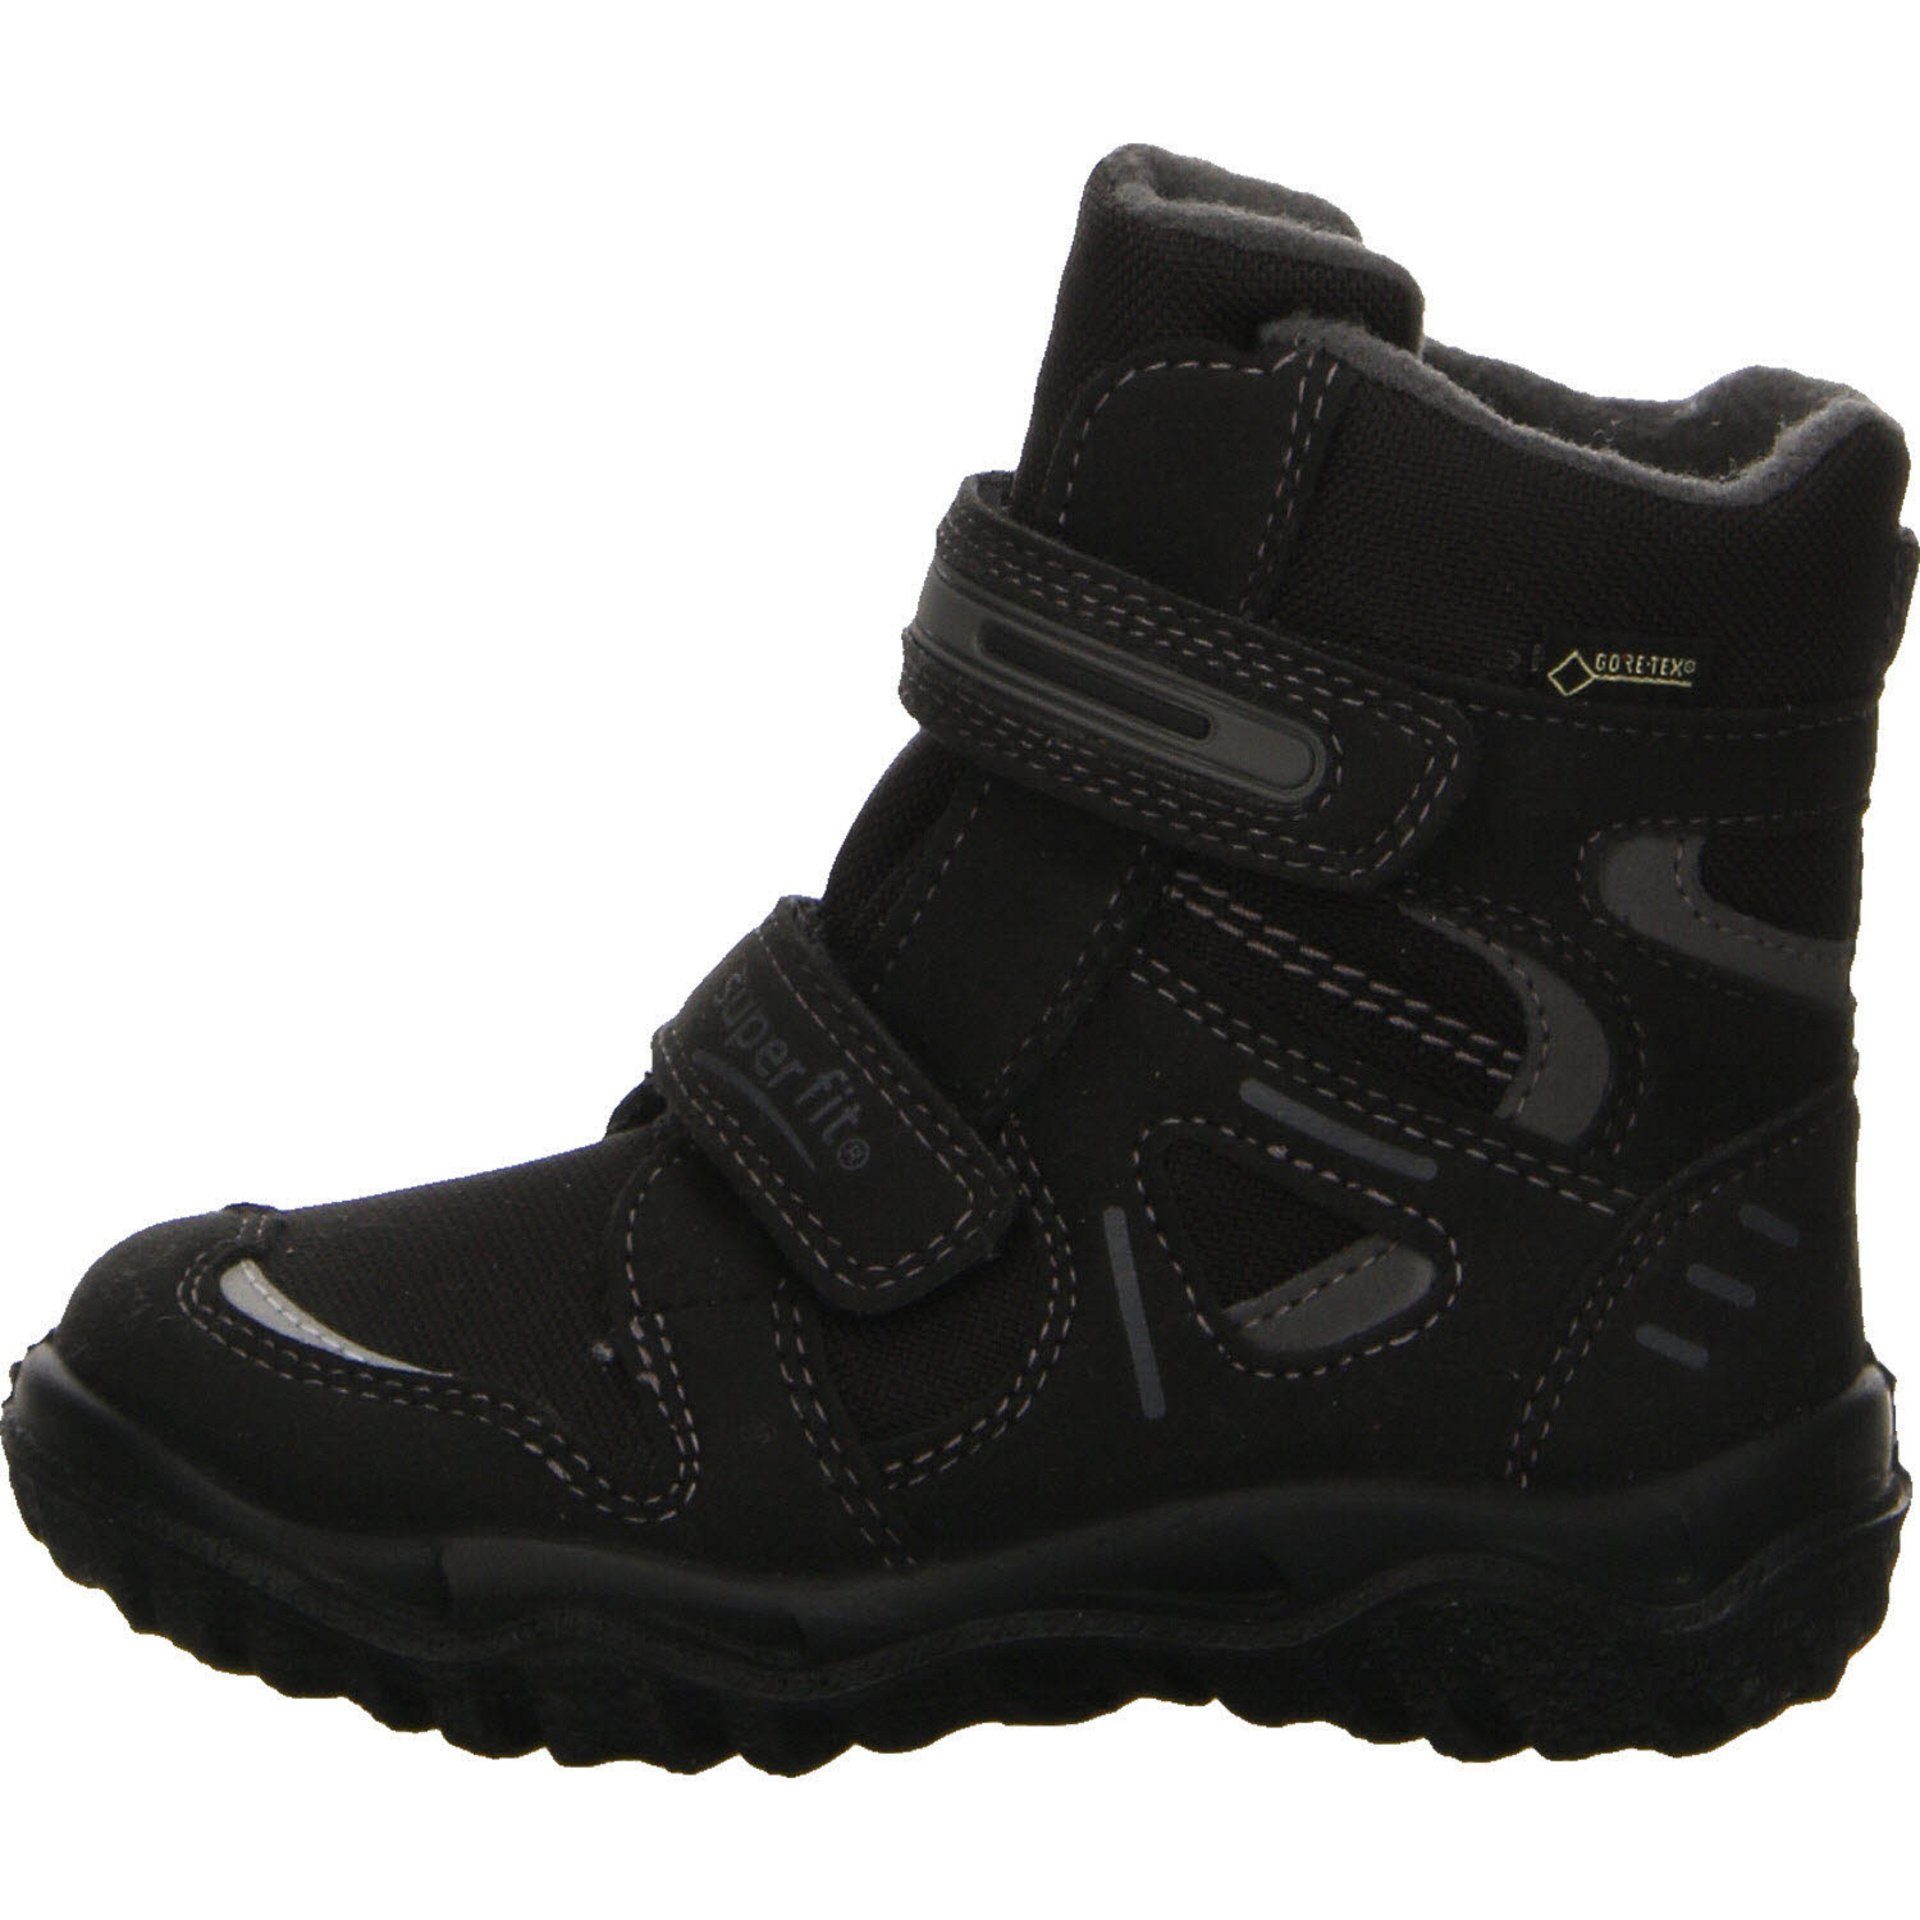 grau Schuhe Stiefel 2 schwarz Superfit Boots Gore-Tex Stiefel Husky Synthetikkombination Jungen